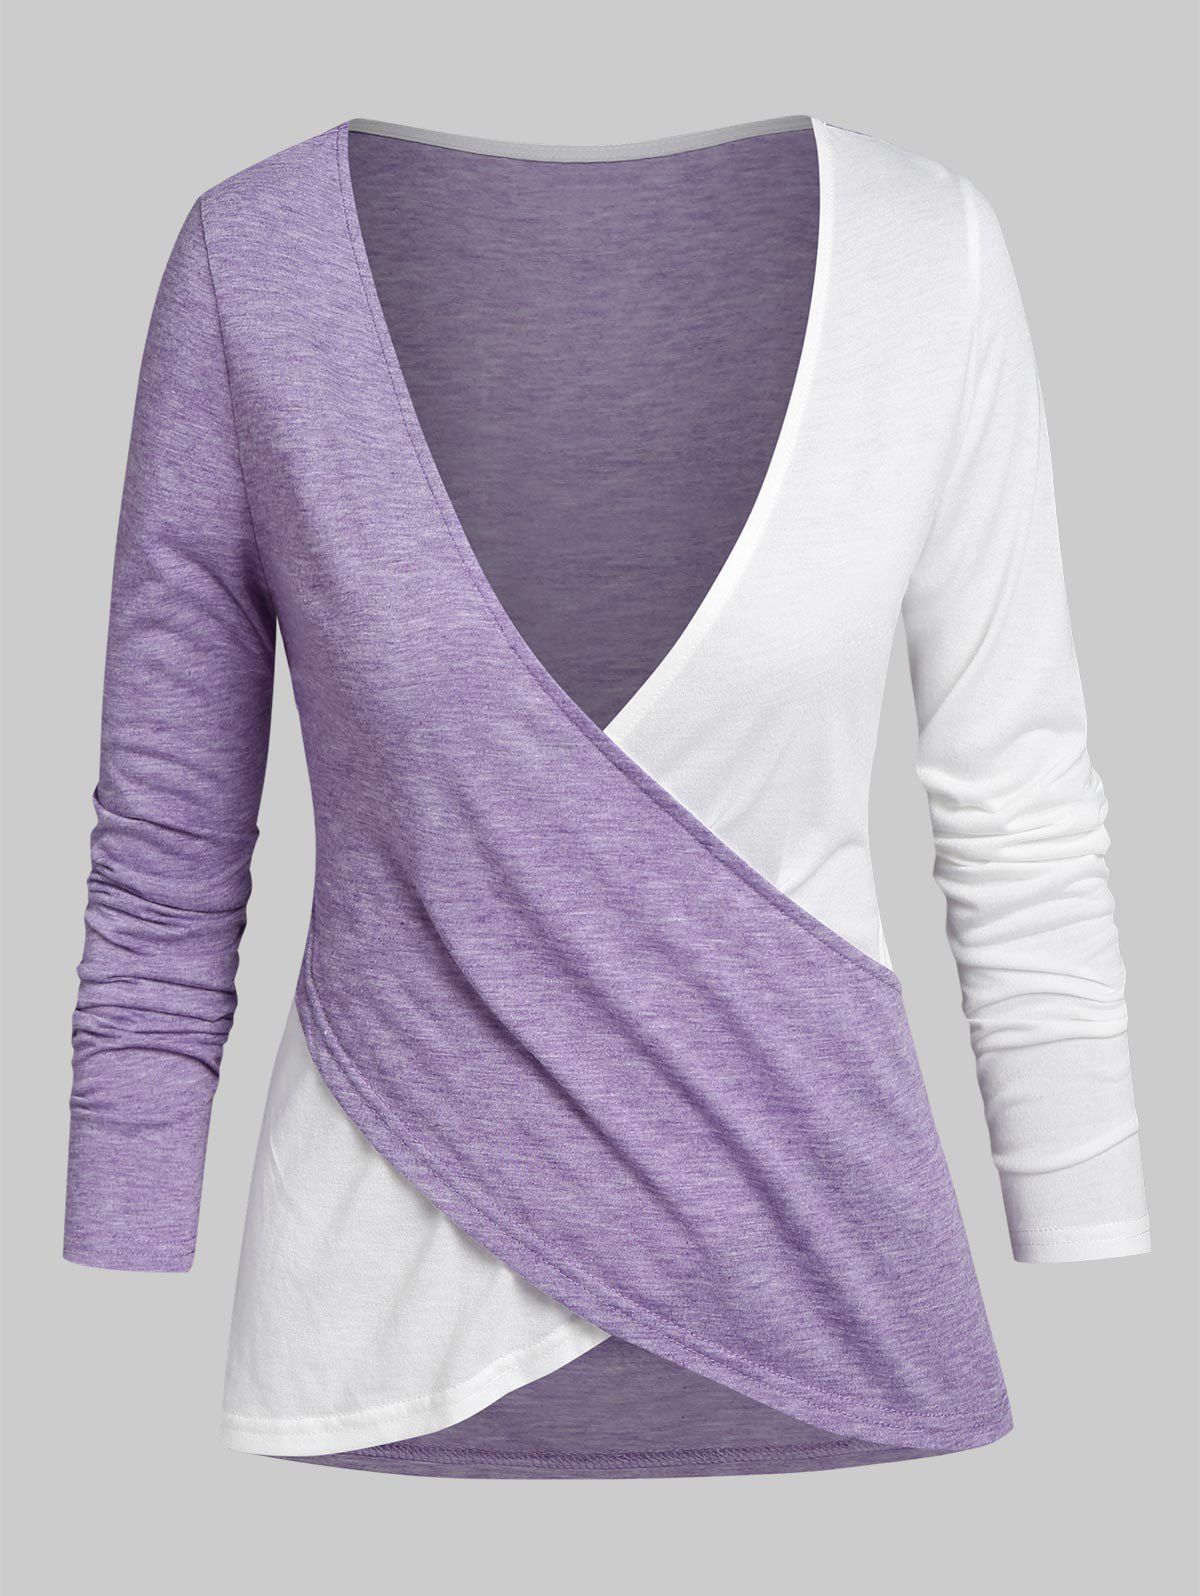 T-shirt Croisé en Blocs de Couleurs - Violet clair L